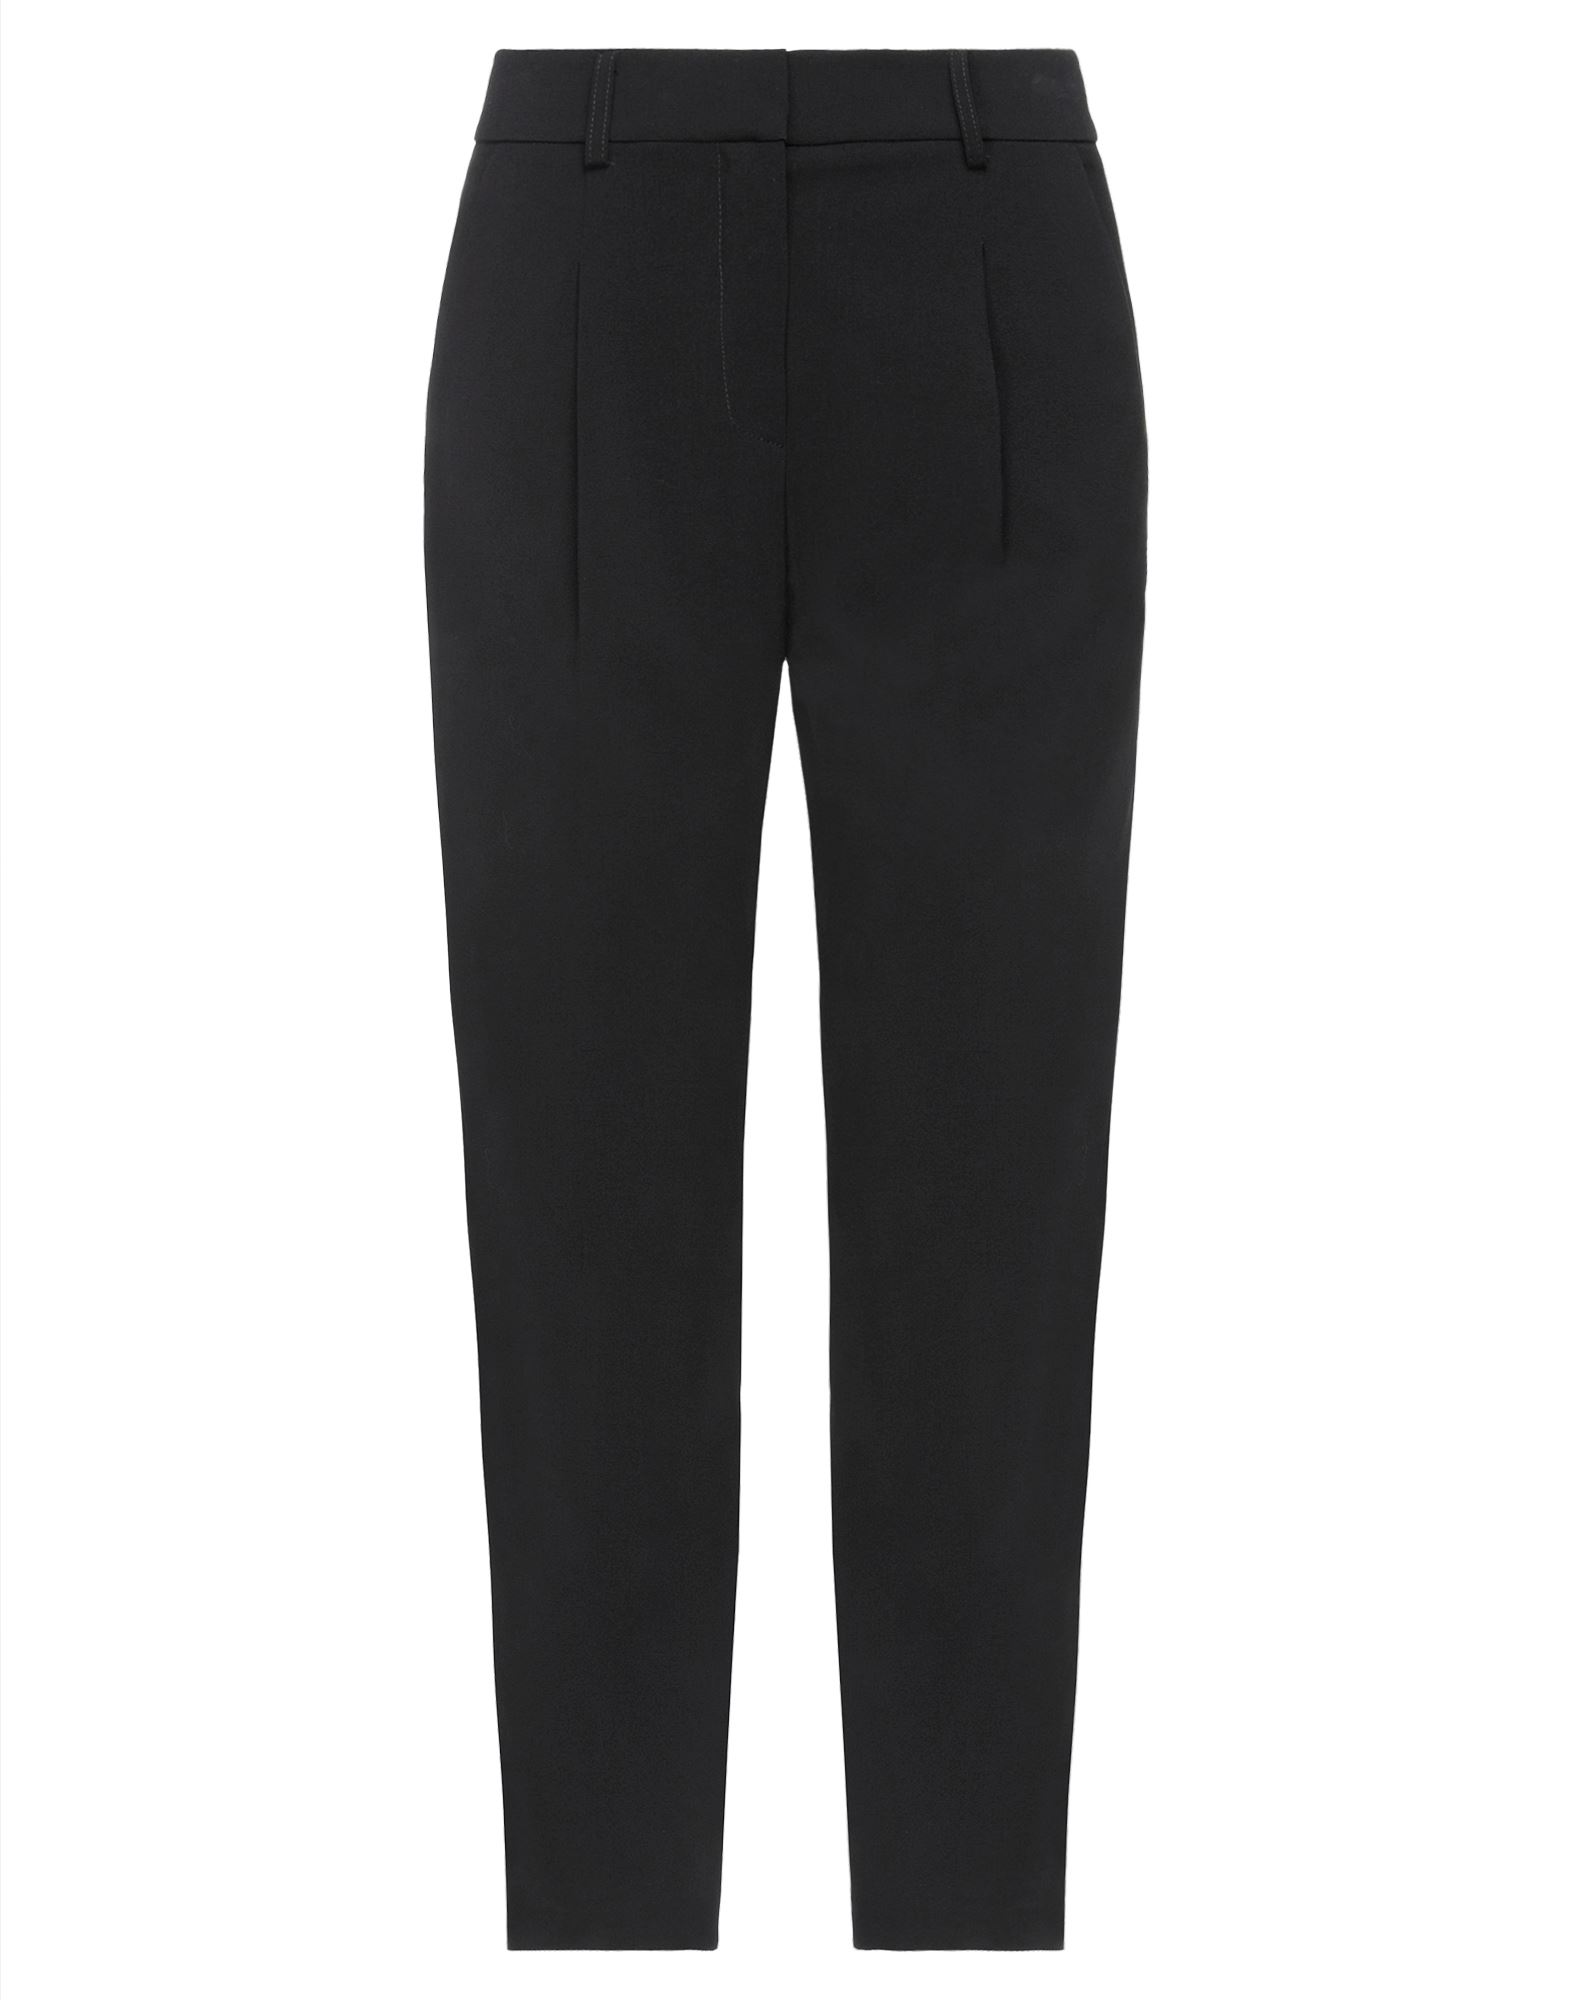 Shop Aniye By Woman Pants Black Size 8 Polyester, Viloft, Elastane